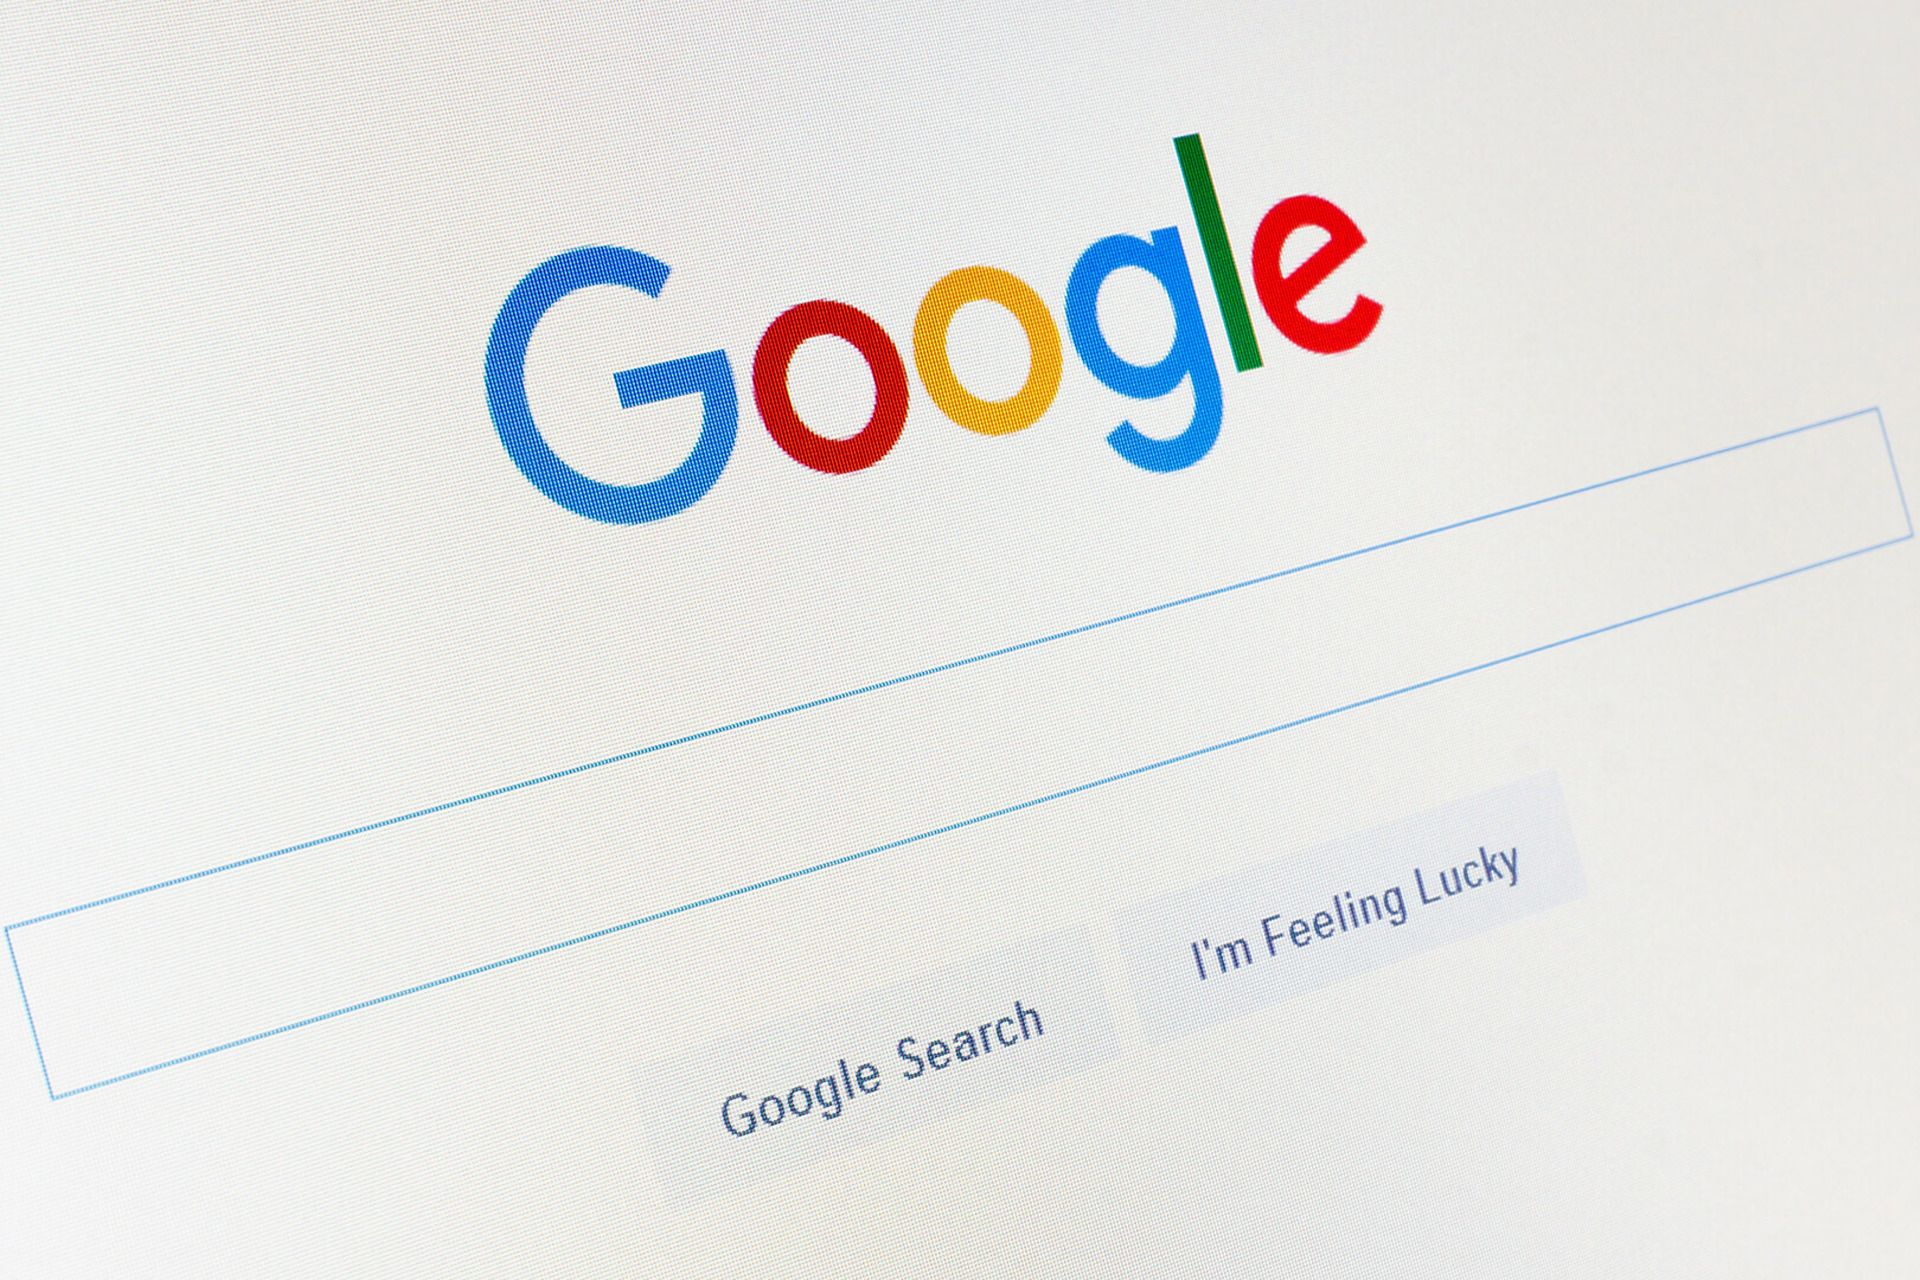 صفحه اصلی موتور جستجو گوگل / Google Search روی مانیتور از زاویه کناری